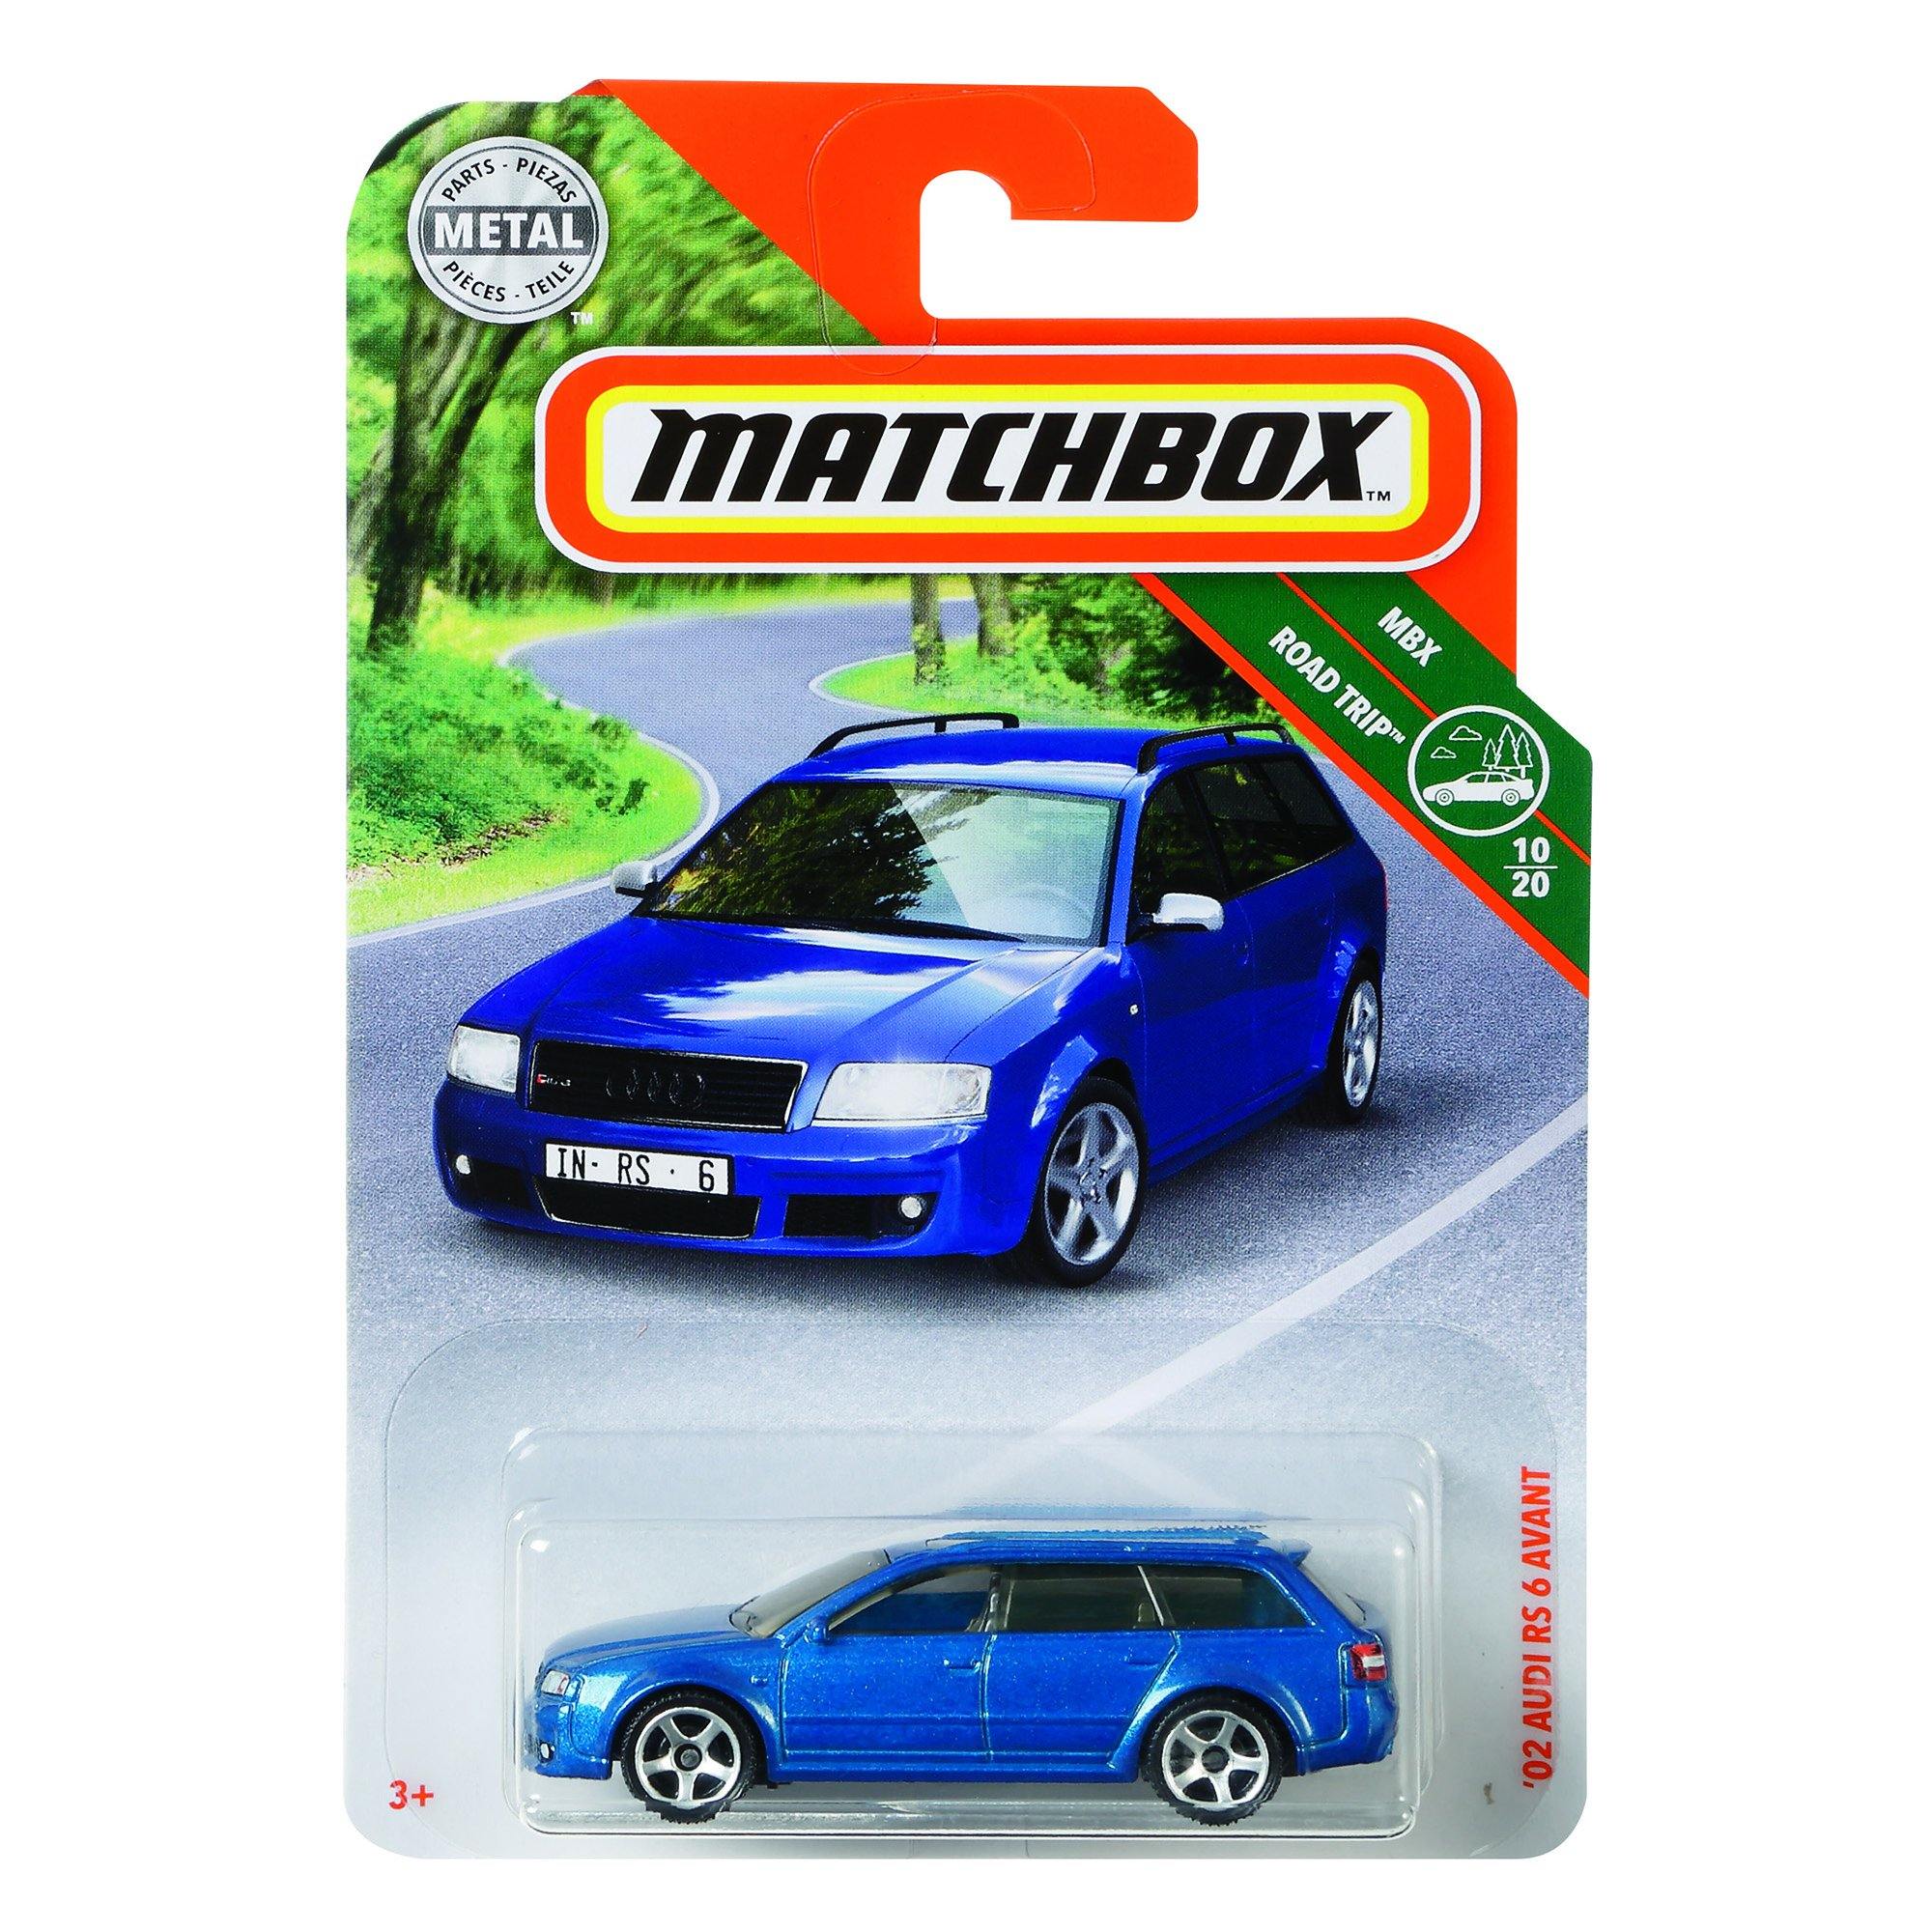 Matchbox - Metal Car 1:75¬† - Dollar Max Depot